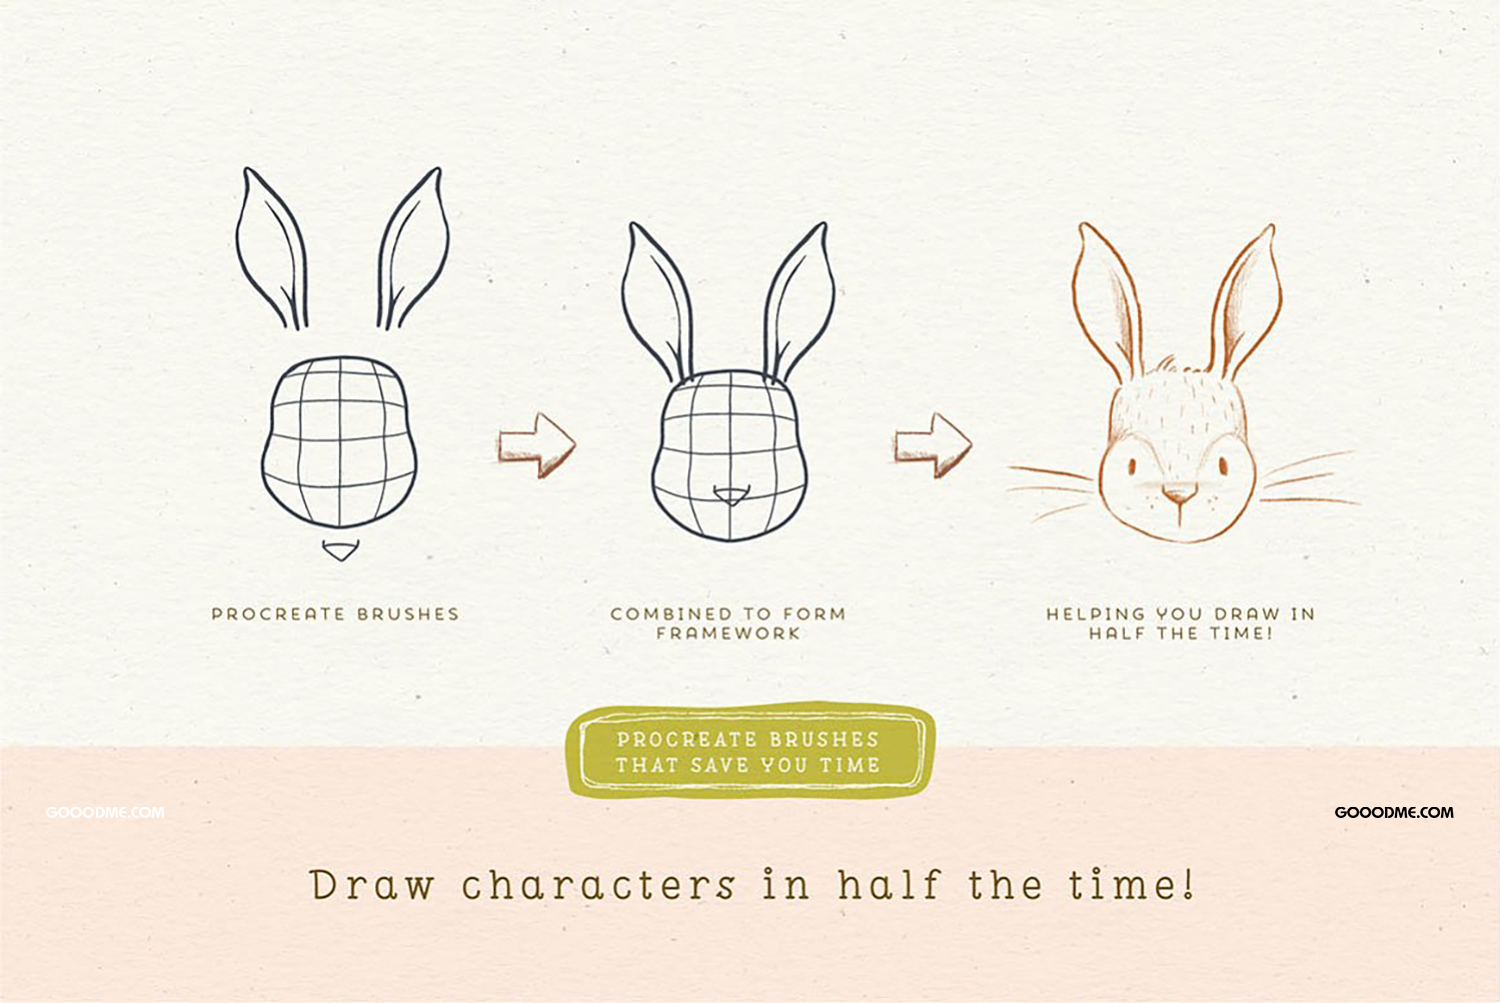 27 卡通人物动物角色插画辅助图形笔刷工具包Procreate Character Drawing Toolkit